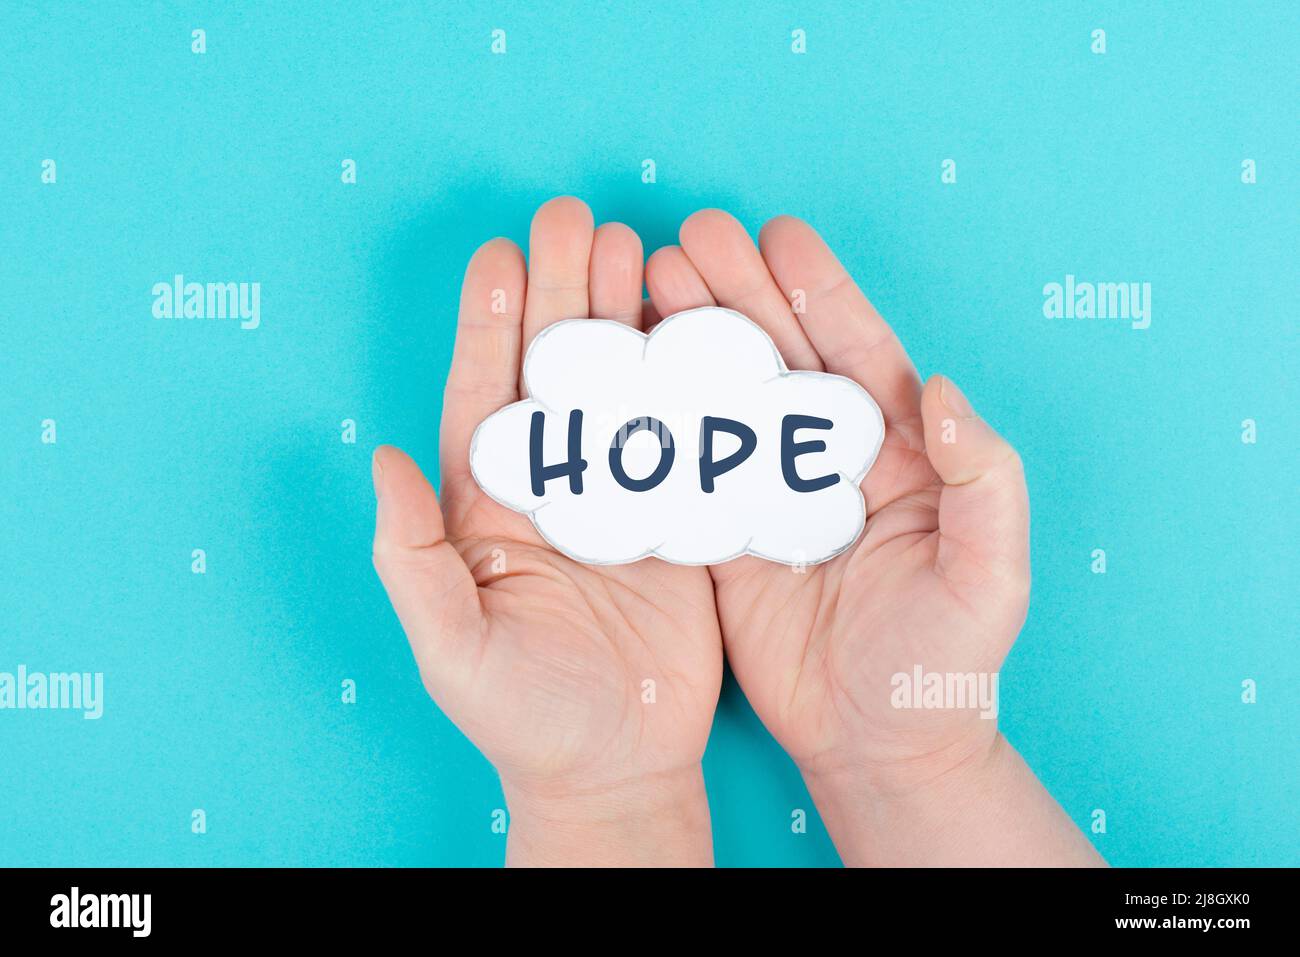 Halten Sie eine Wolke mit dem Wort Hoffnung in den Händen, Vertrauen und glauben Konzept, Vertrauen in die Zukunft, hoffnungsvoll positive Denkweise Stockfoto